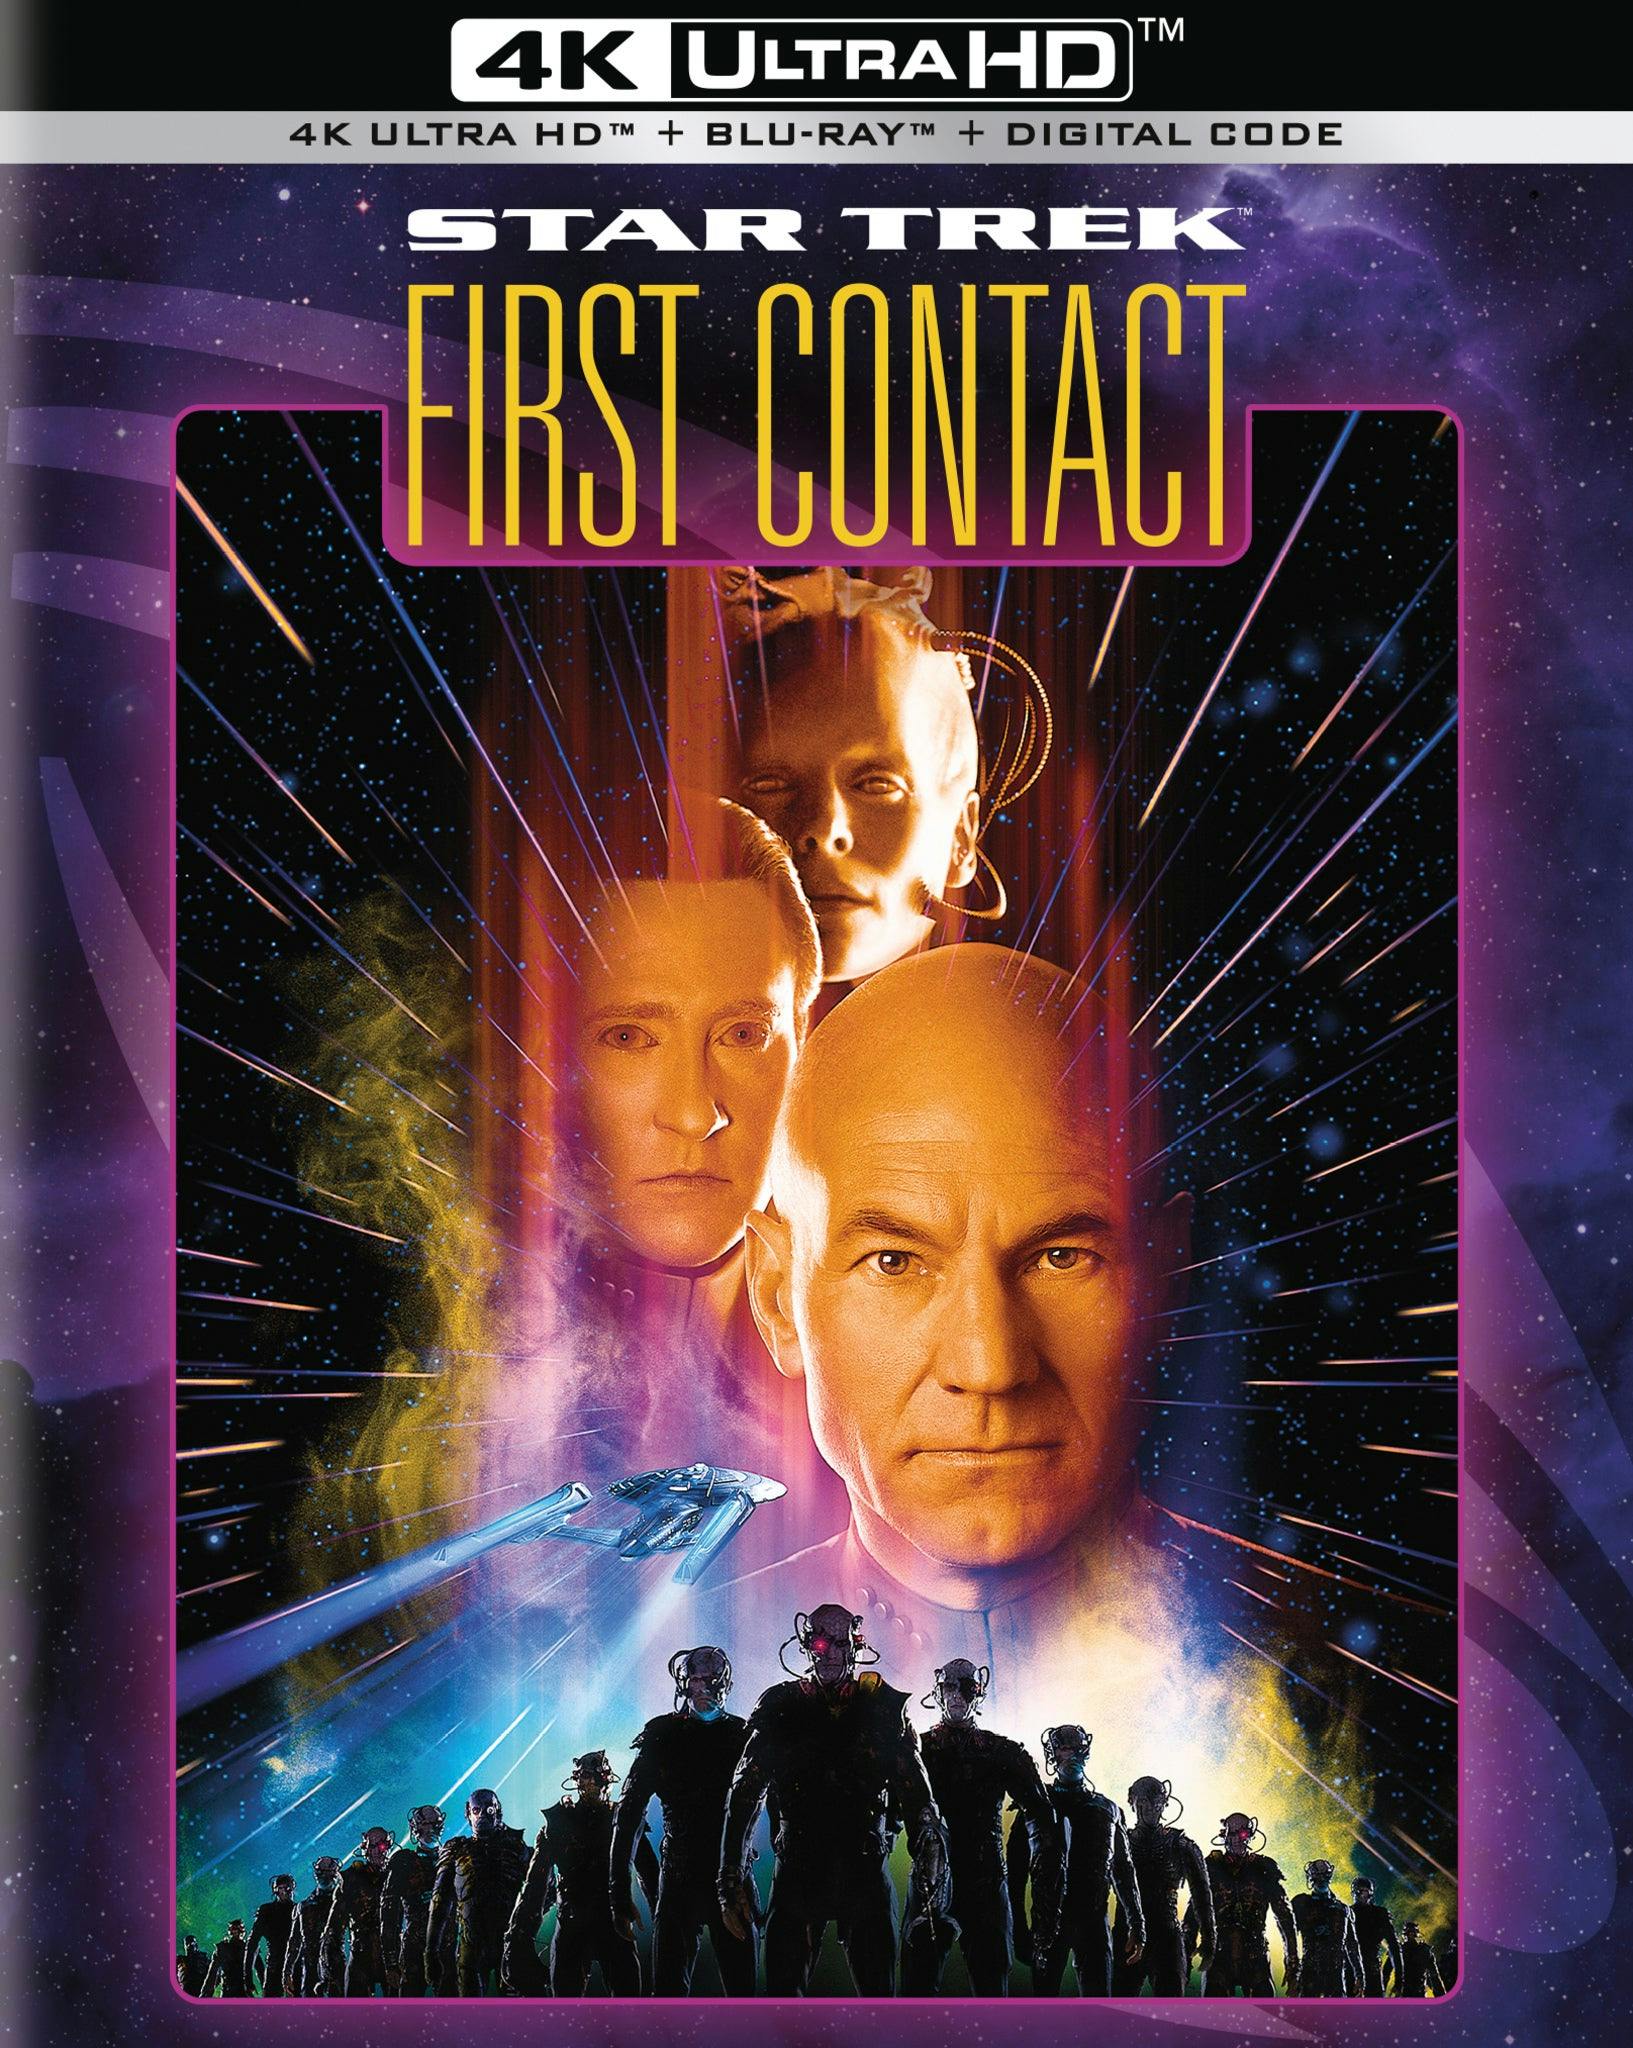 Star Trek: First Contact 4K Ultra HD packshot